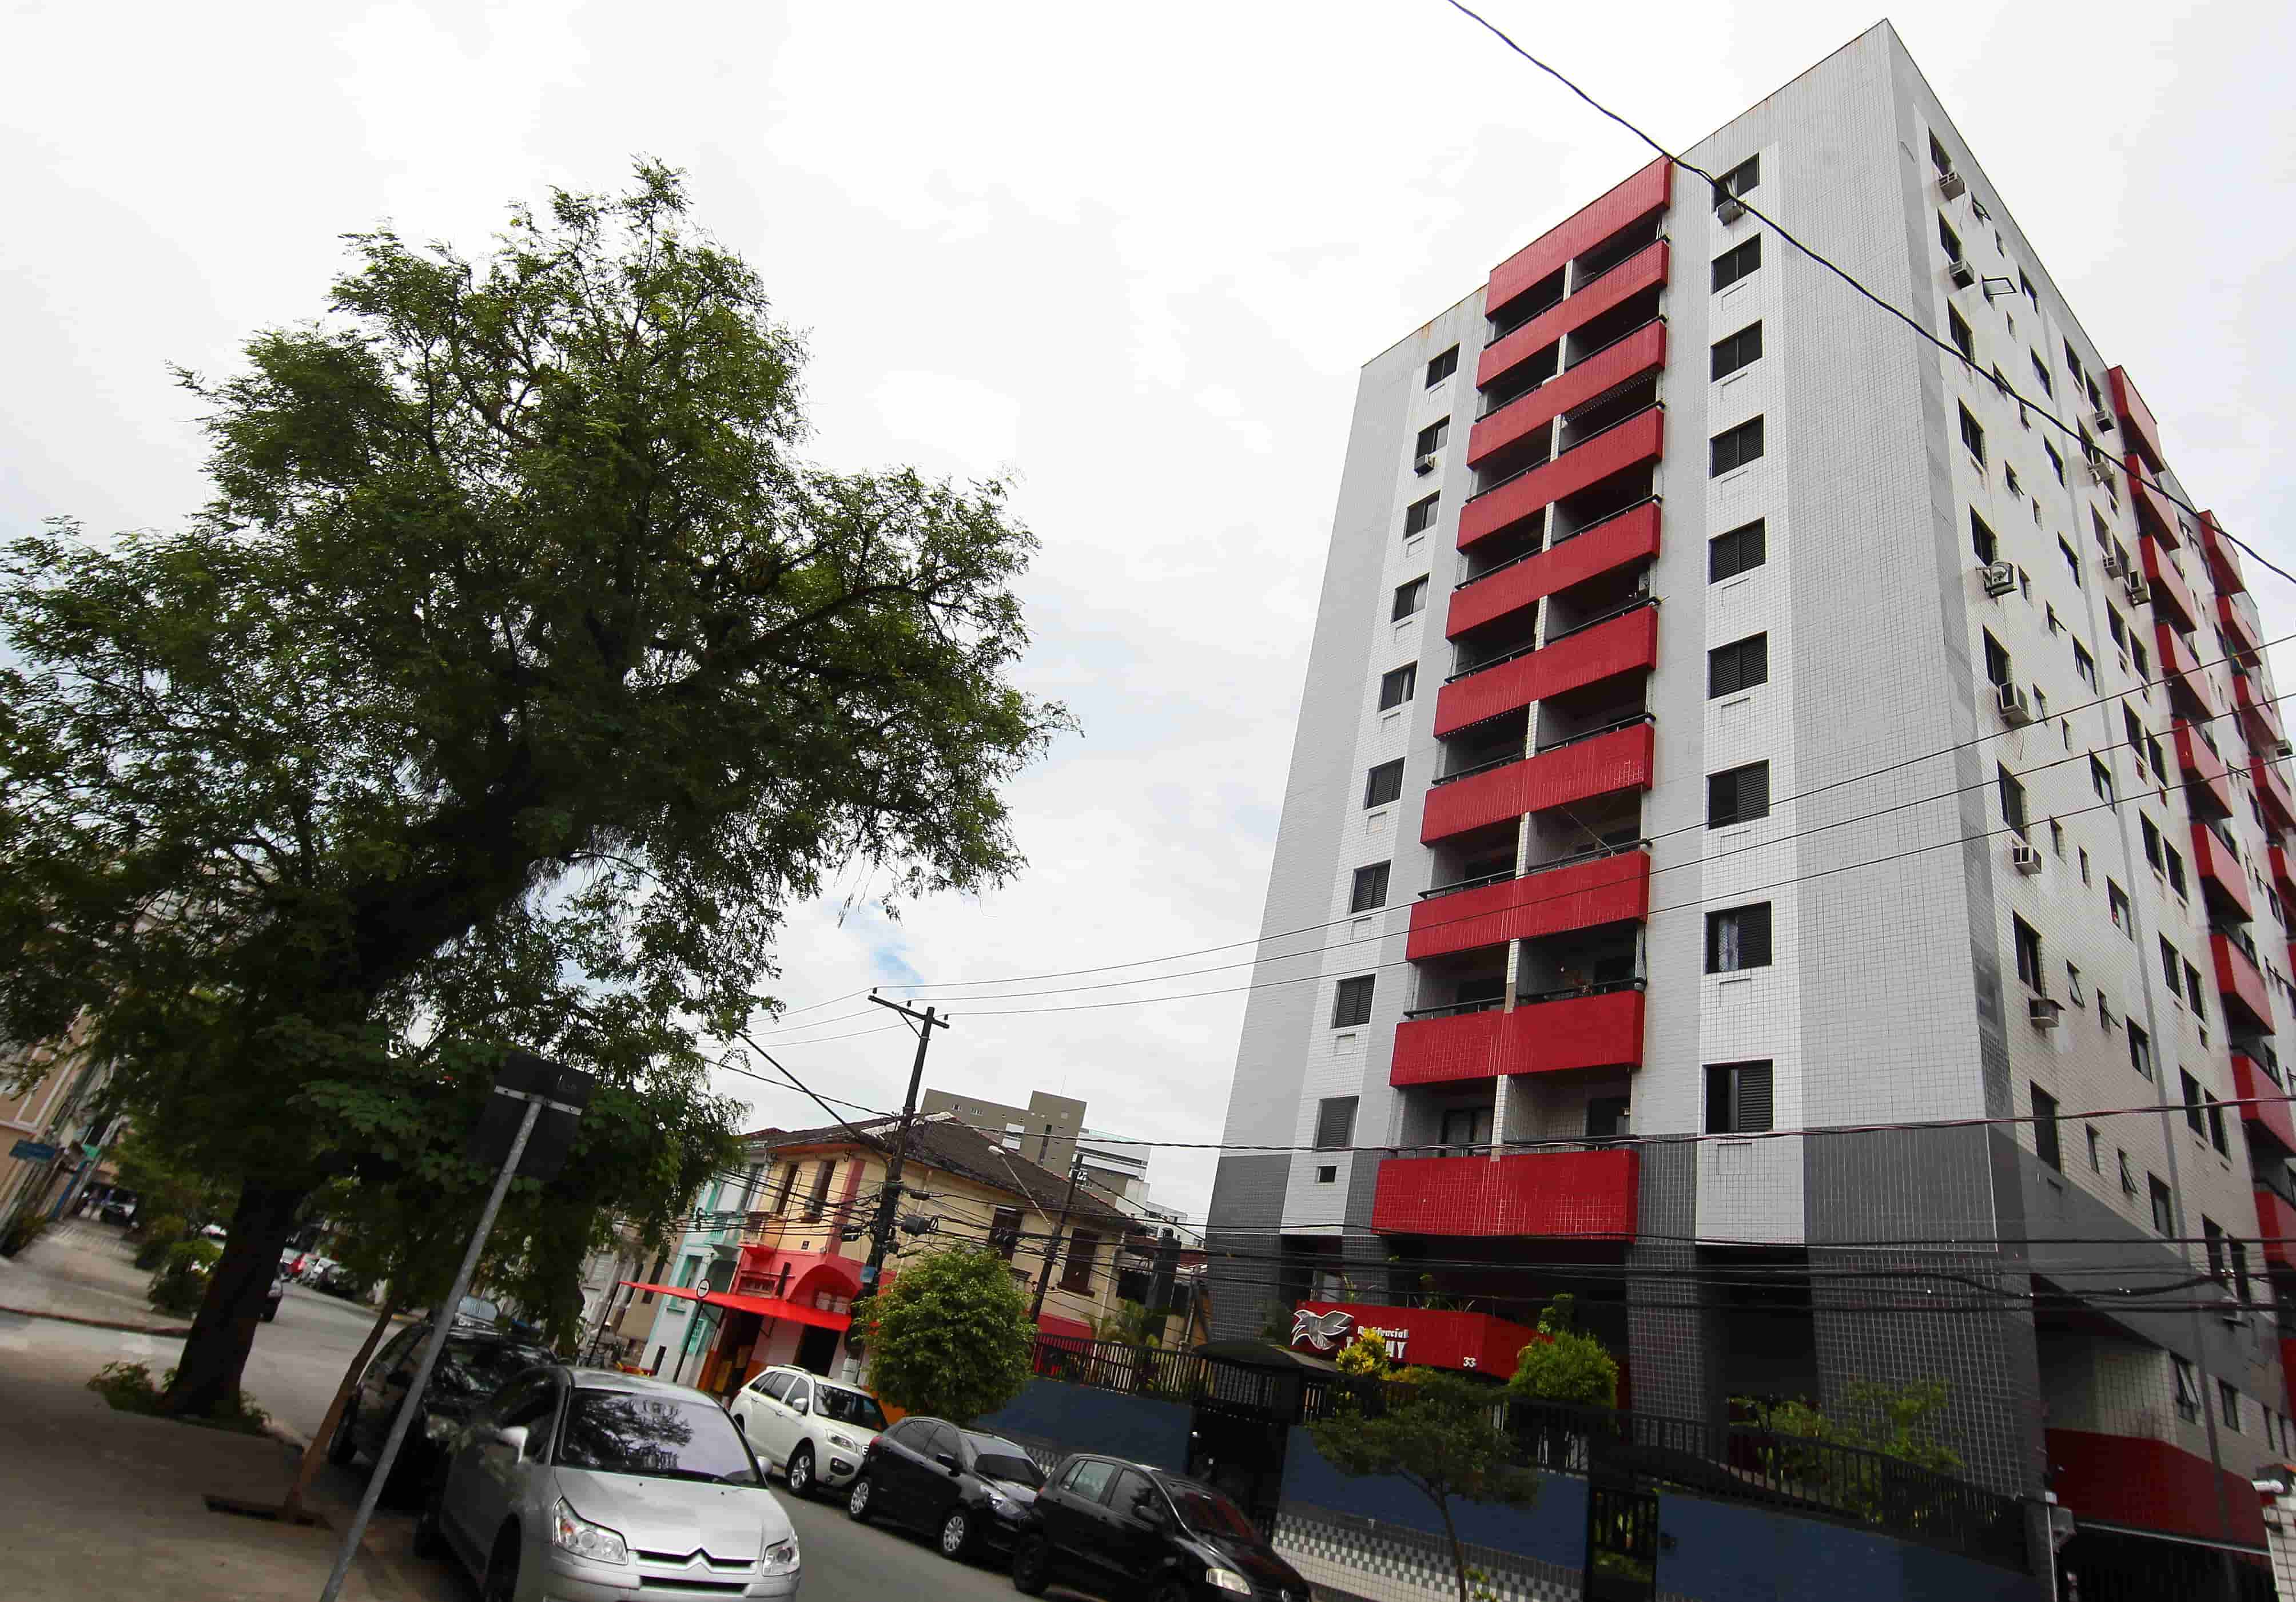 Acidente ocorreu em um edifício residencial da Rua Guararapes, na Vila Belmiro